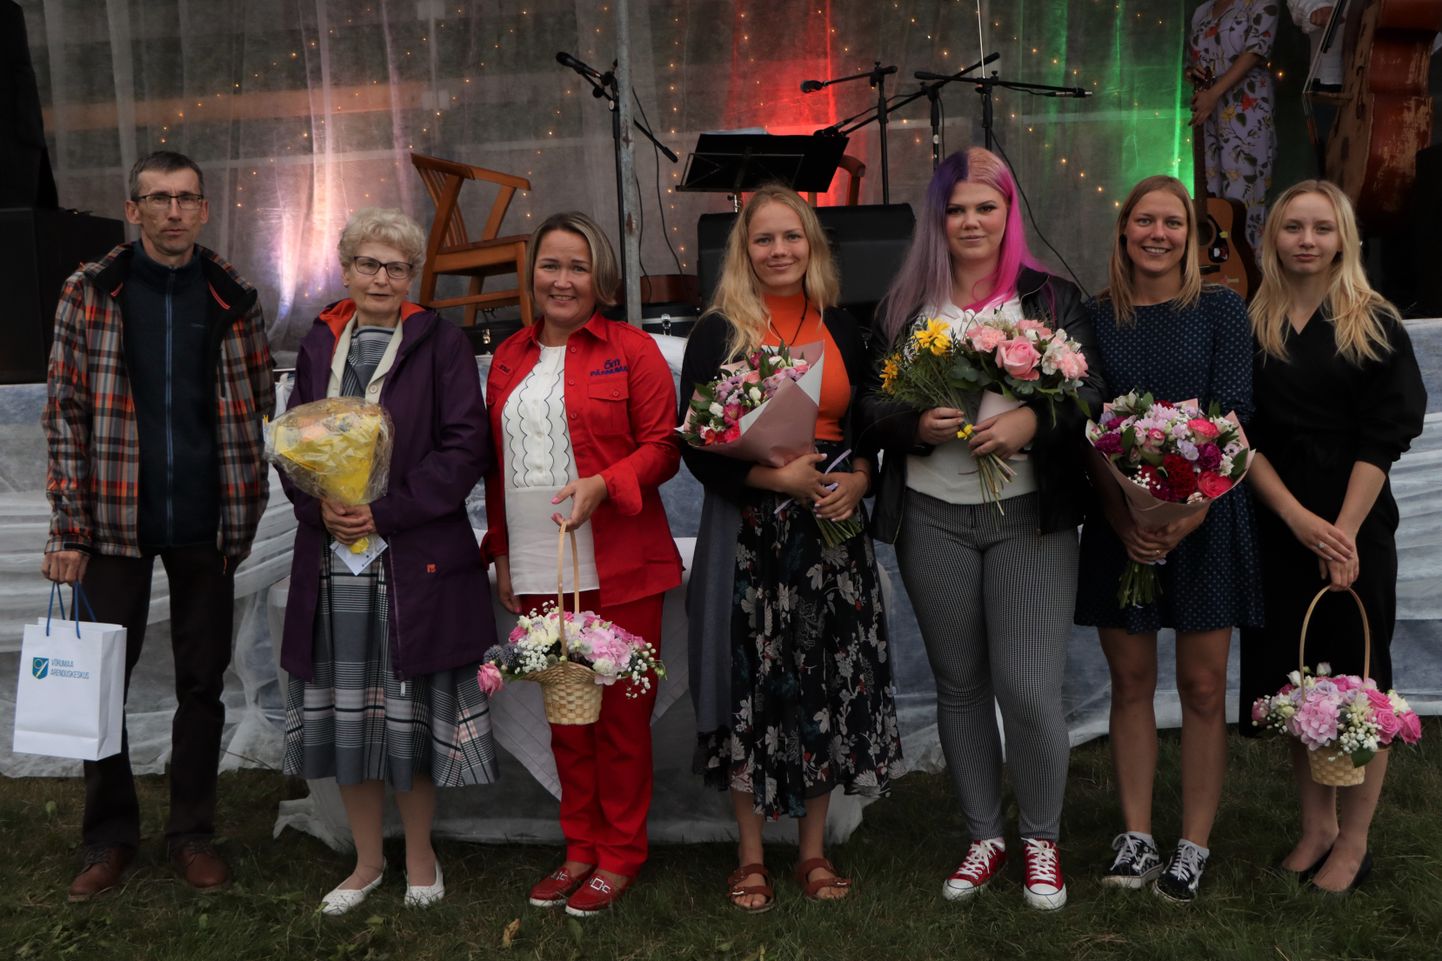 Pildil tunnustuse saanud Rainer Kaseväli (vasakult), Ellen Varov, Jaanika Käst, Jaanika Orav, Mari Mandel, Airi Parv, Triine Beate Tagamets.